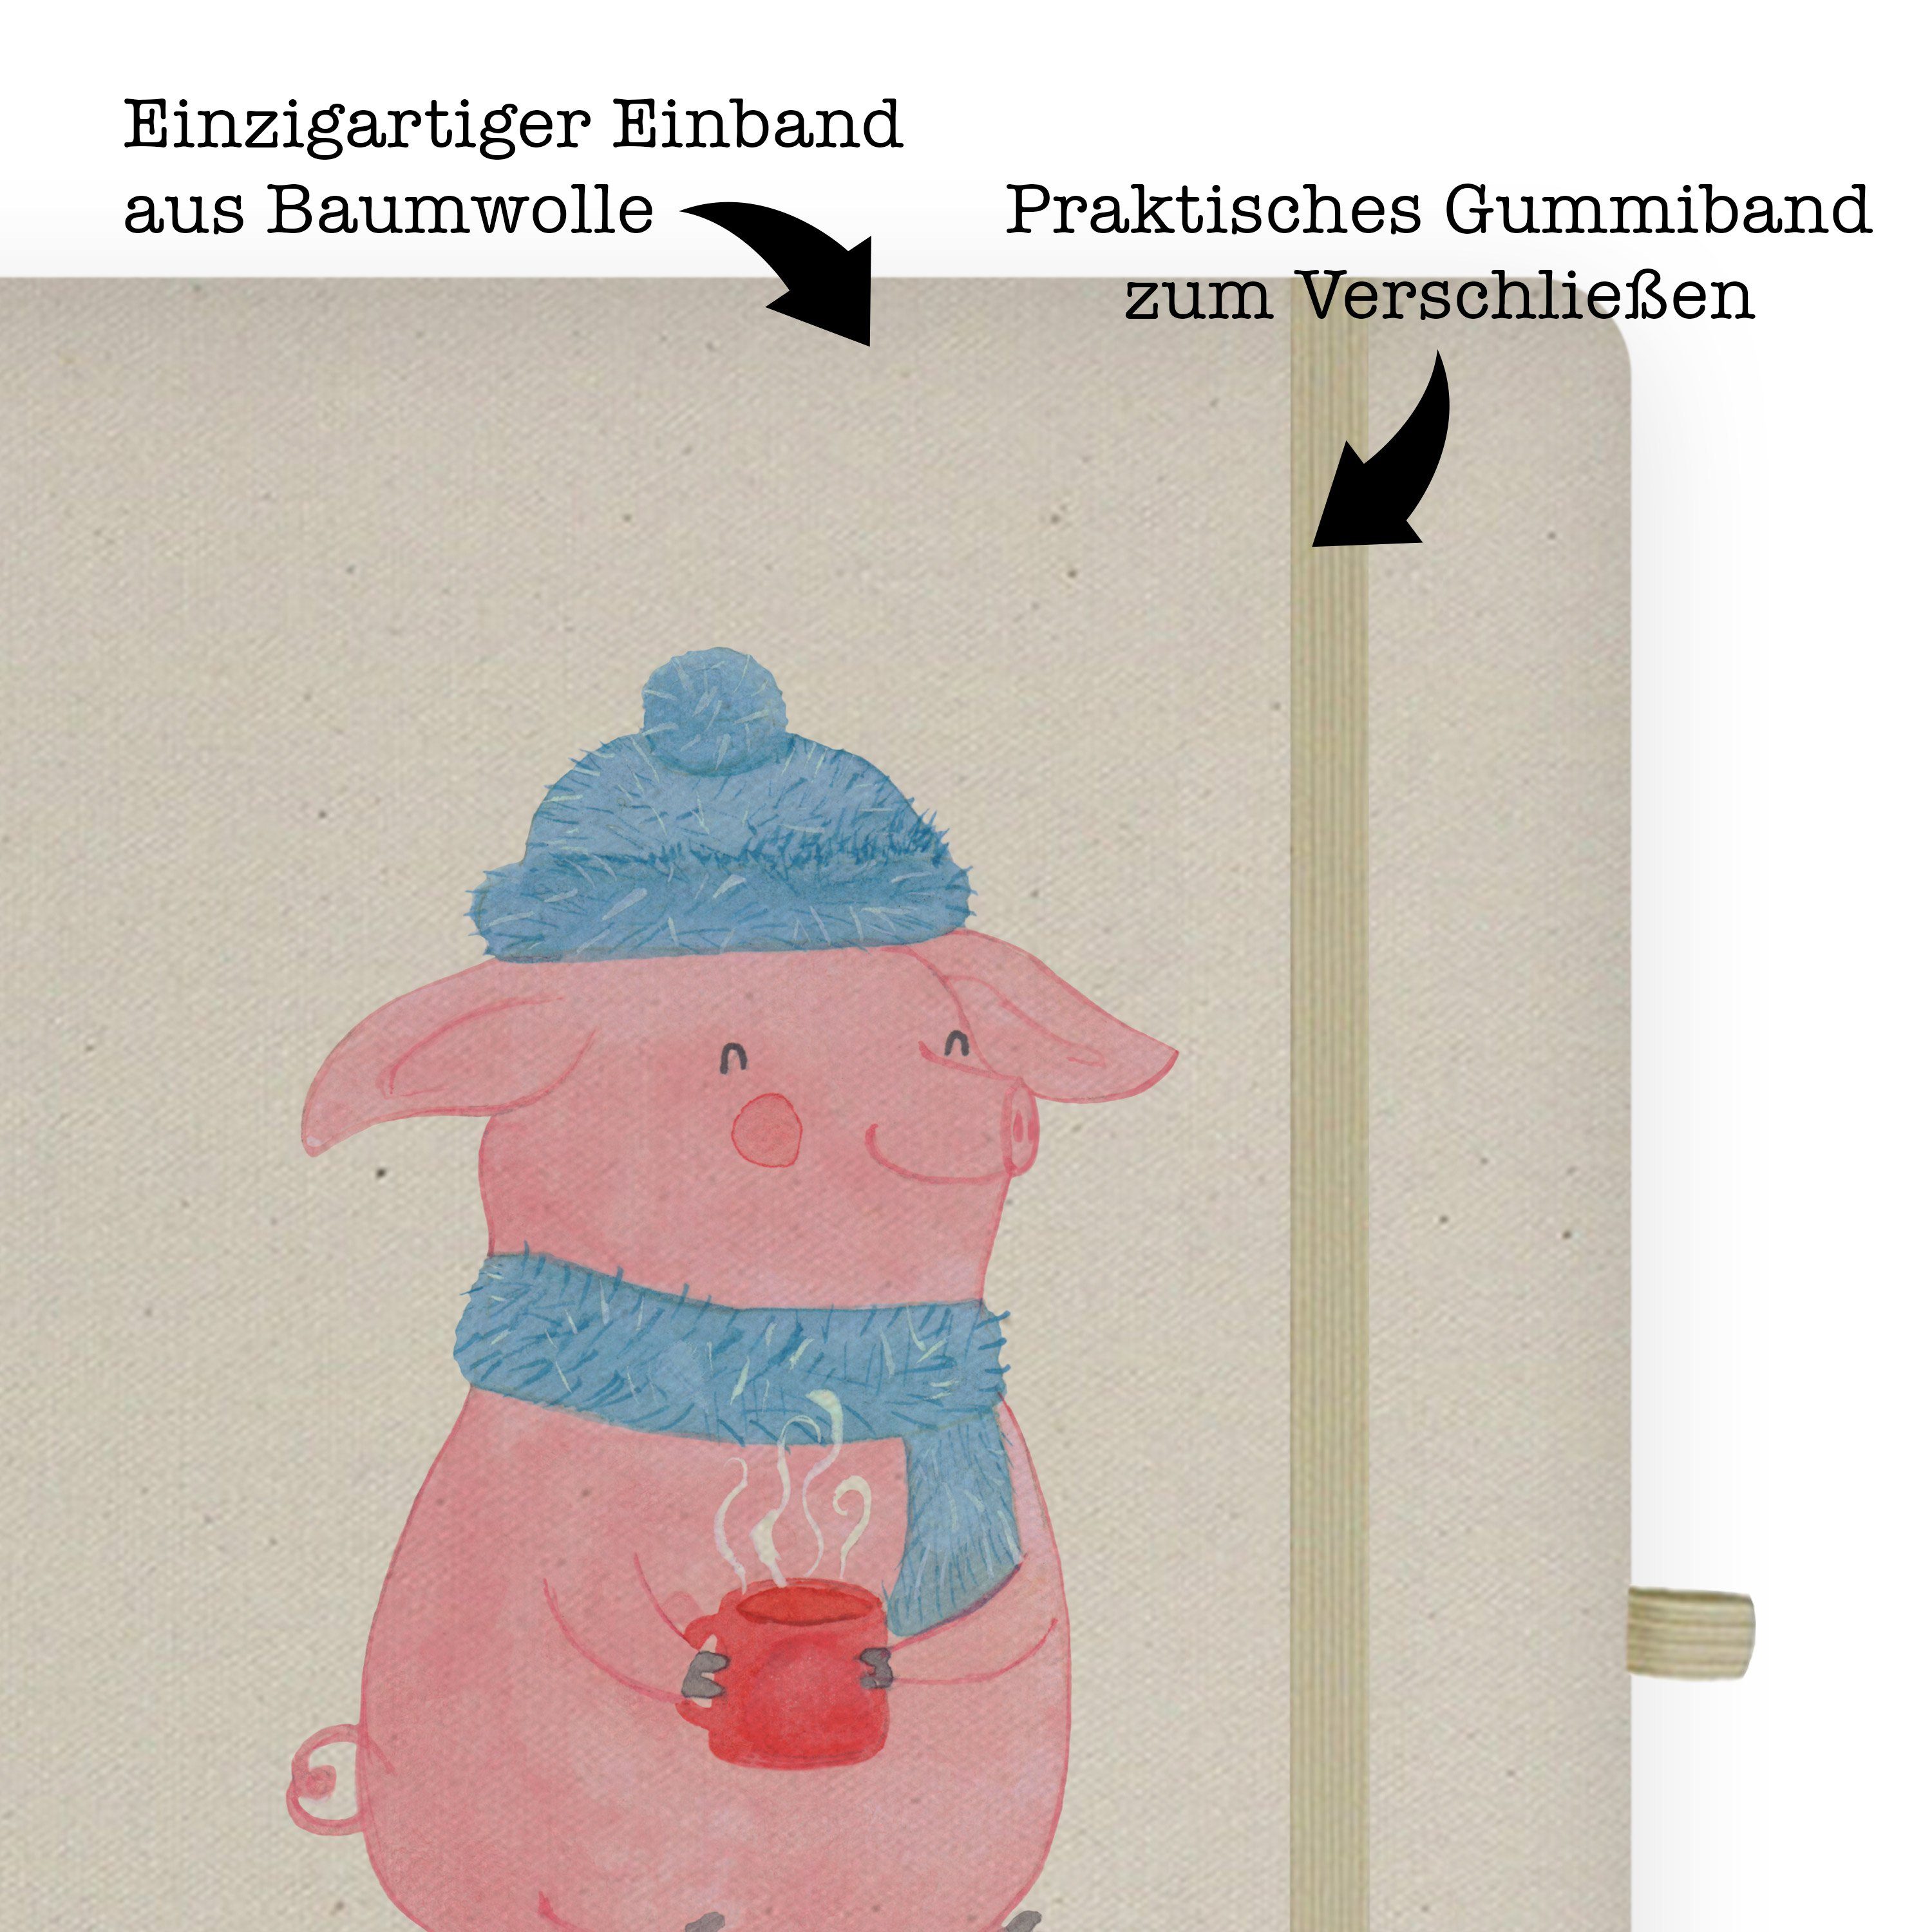 & Glühschwein Mr. - Mrs. Mr. Mrs. Lallelndes - Notizbuch Ein Panda Spruch, Panda & Geschenk, Transparent Notizen,